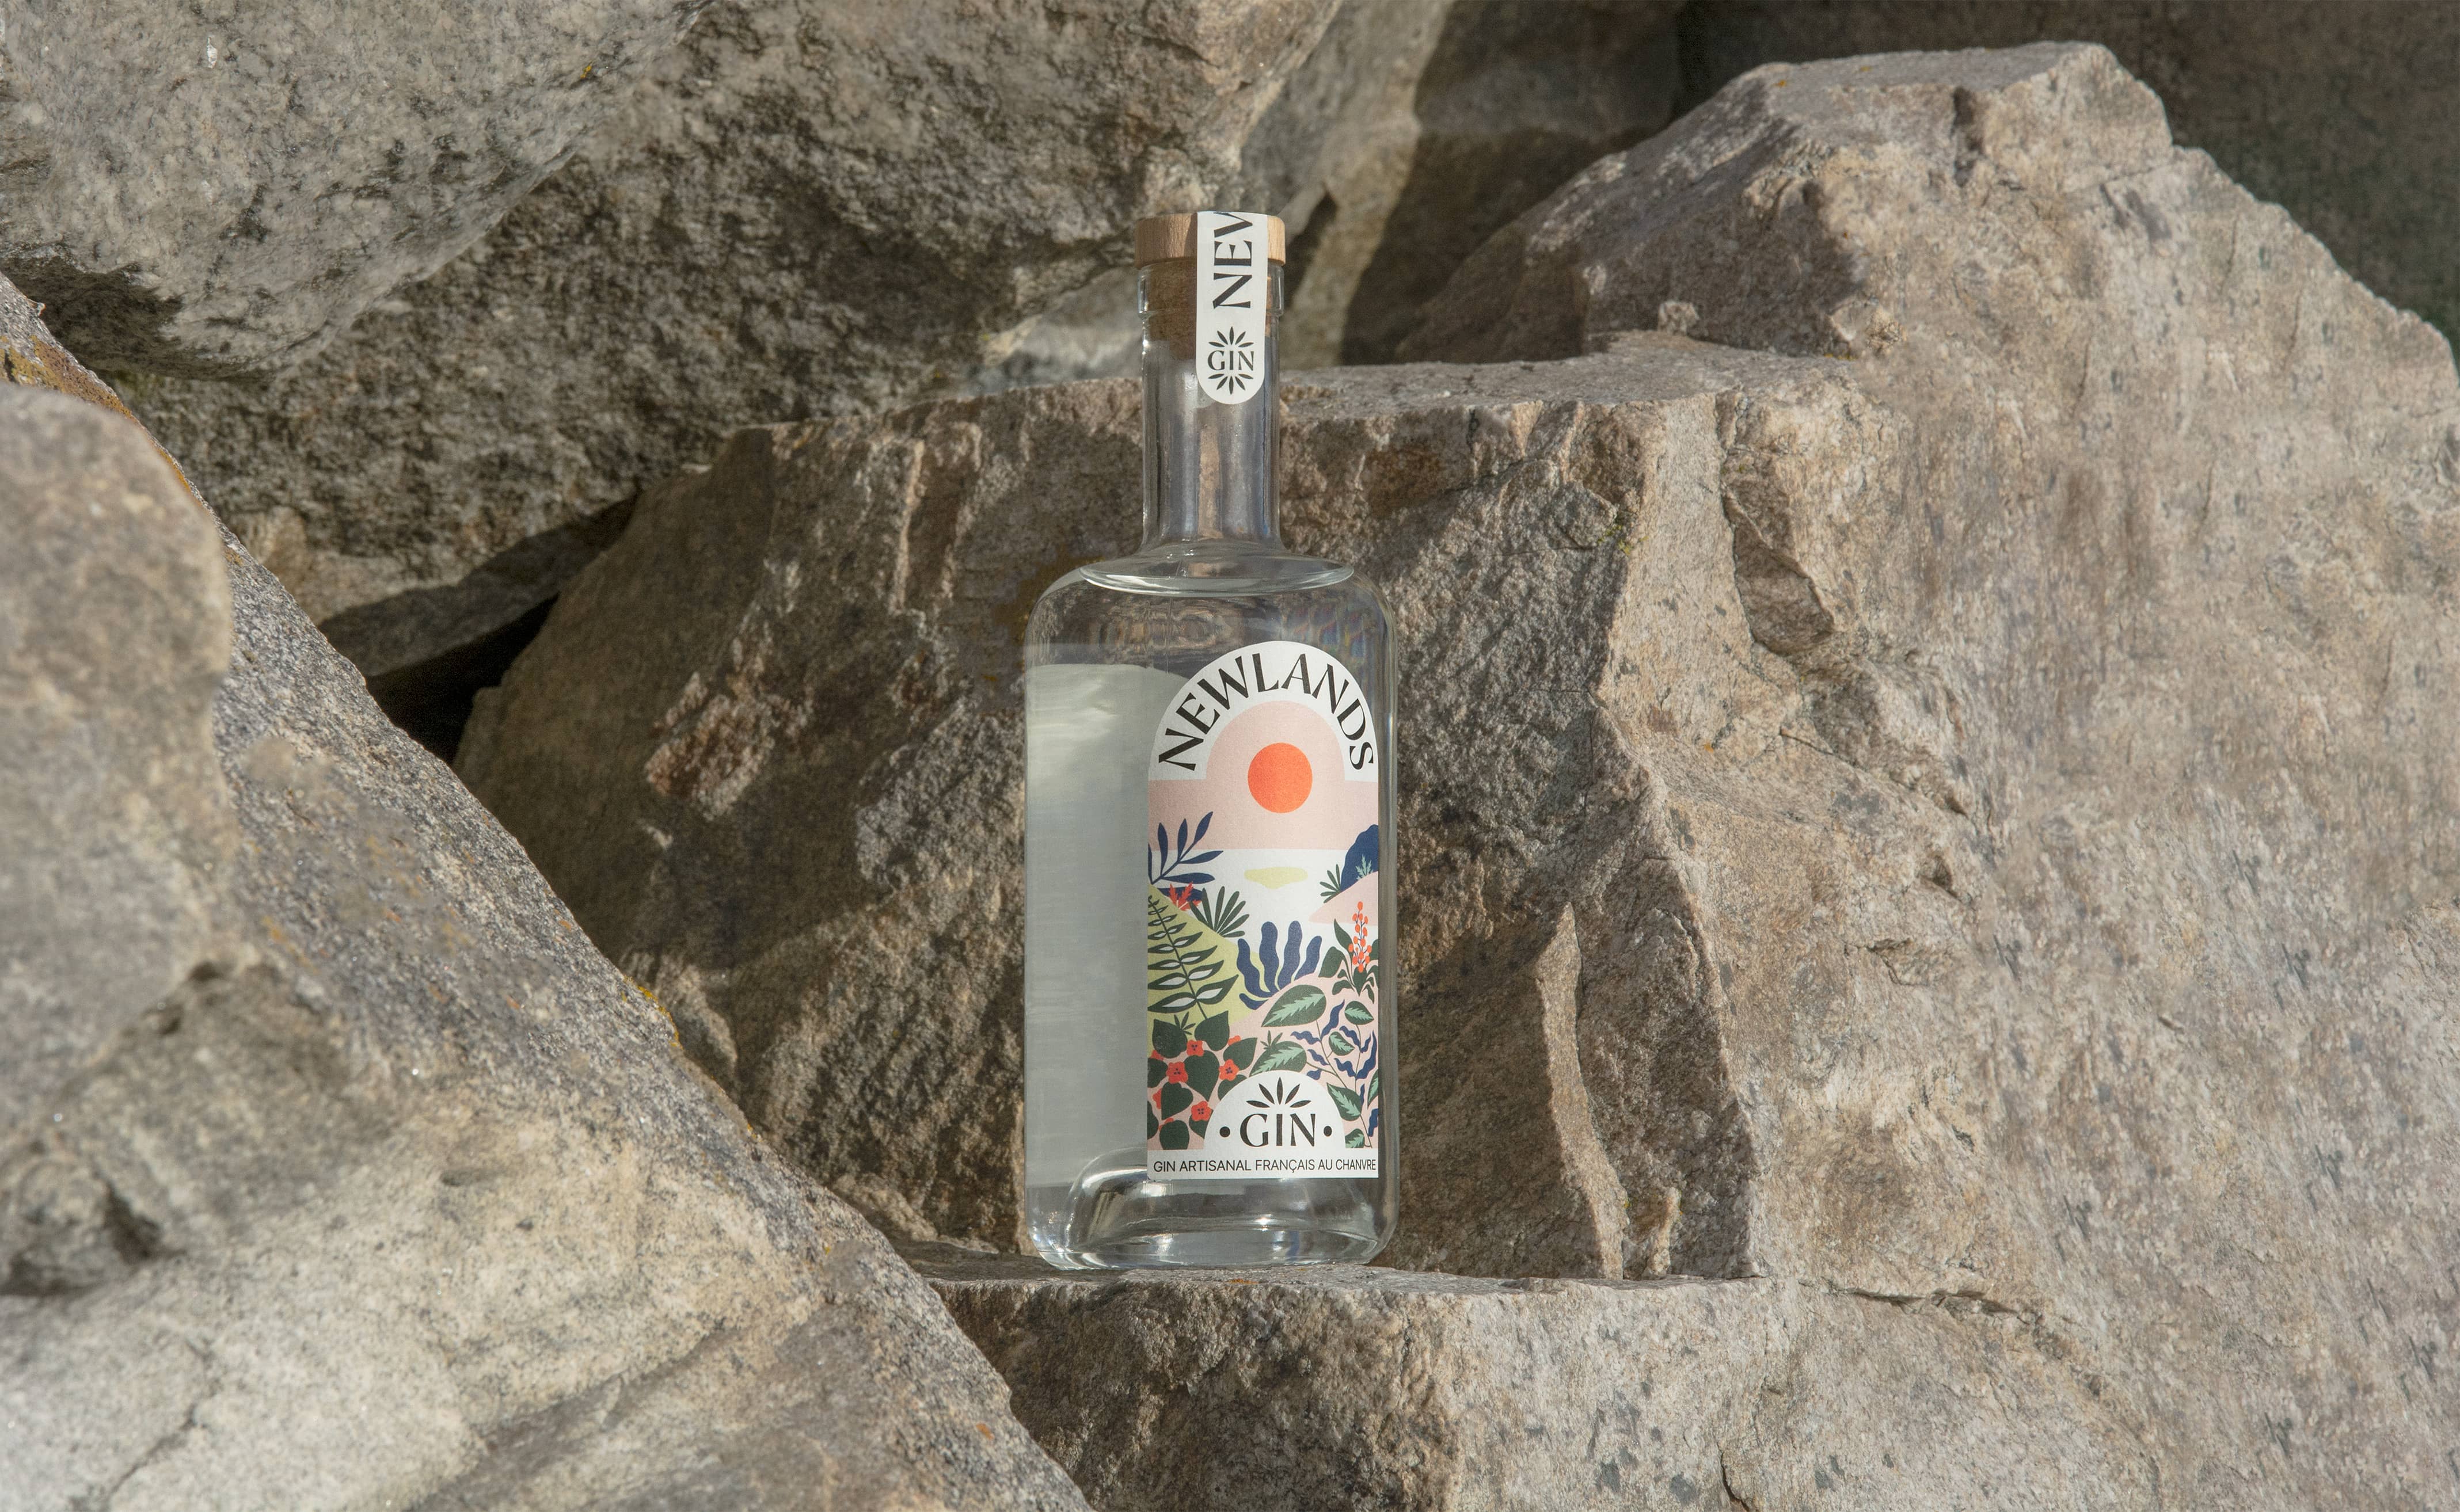 bouteille de newlands gin dans les rochers